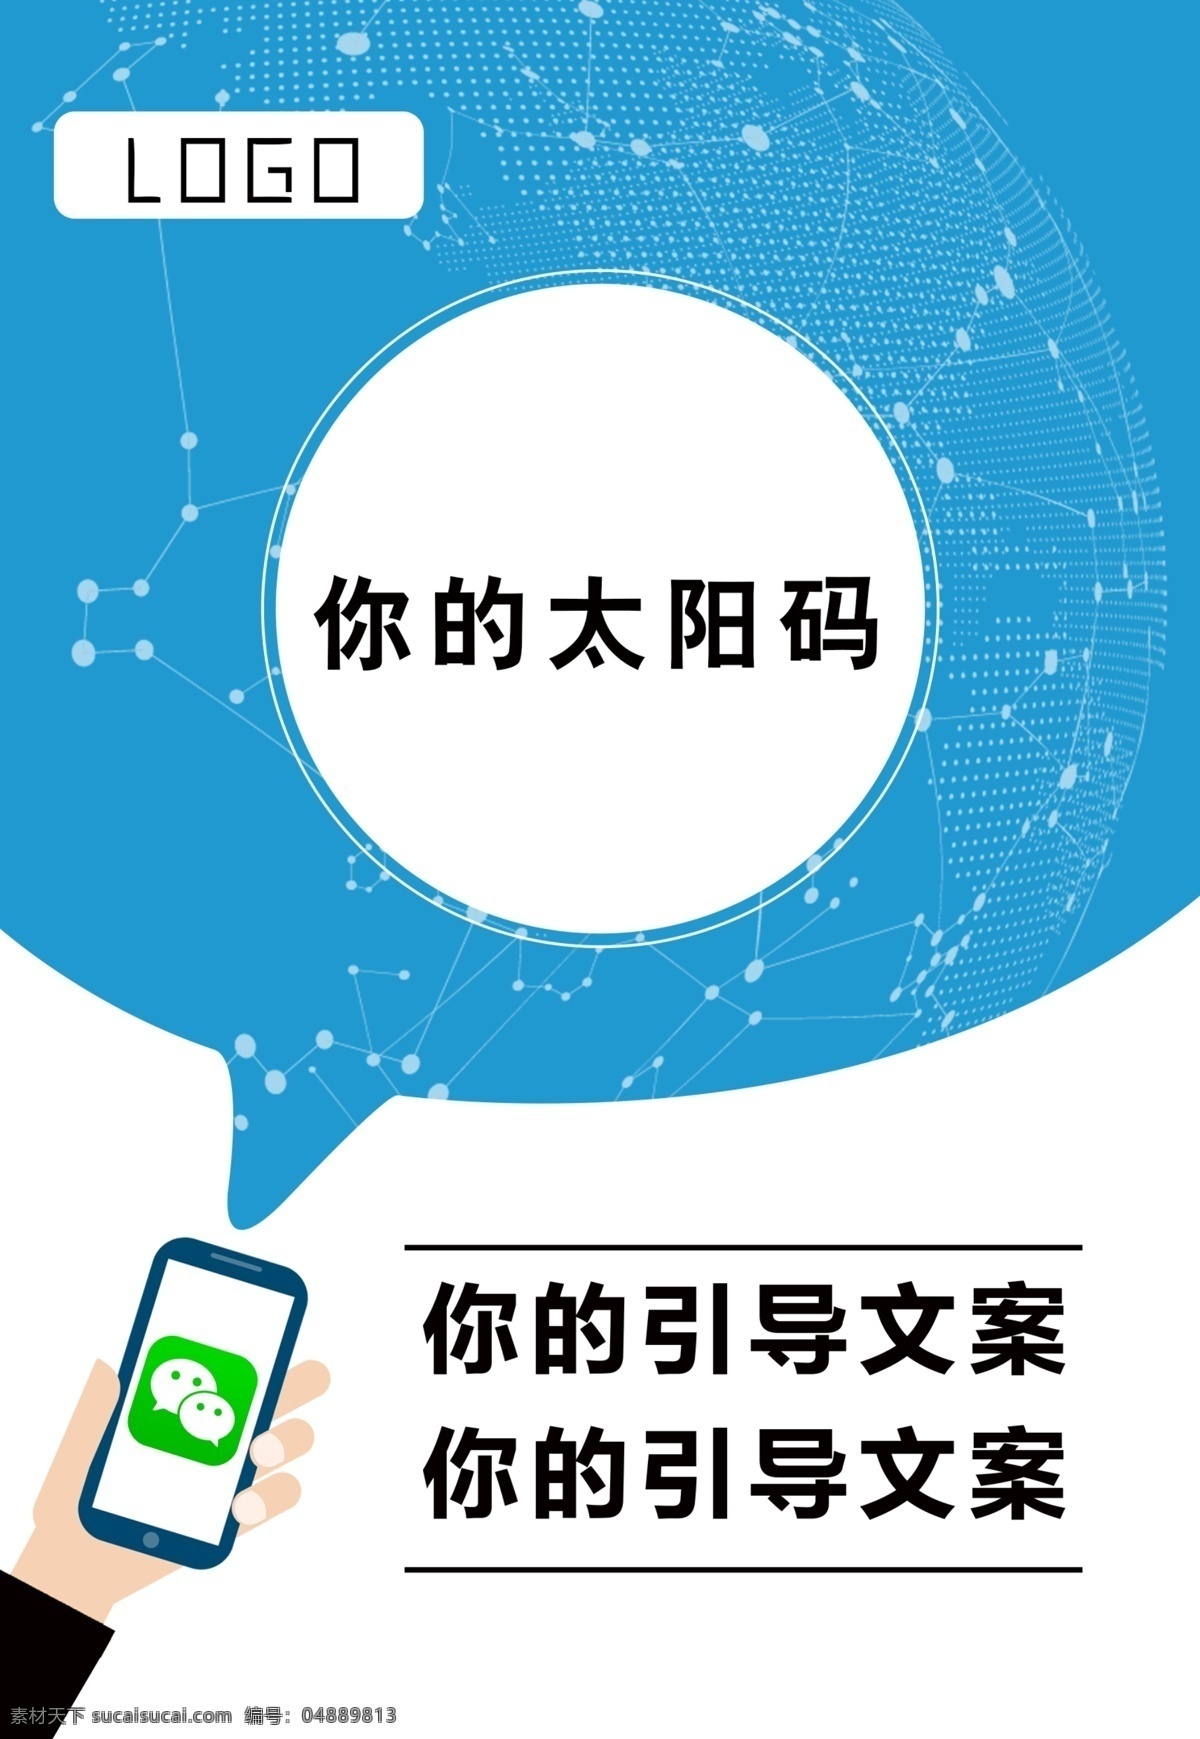 二维码台卡 太阳码台卡 二维码 太阳码 台卡 推广 app推广 小程序推广 科技 蓝色 微信 招贴设计